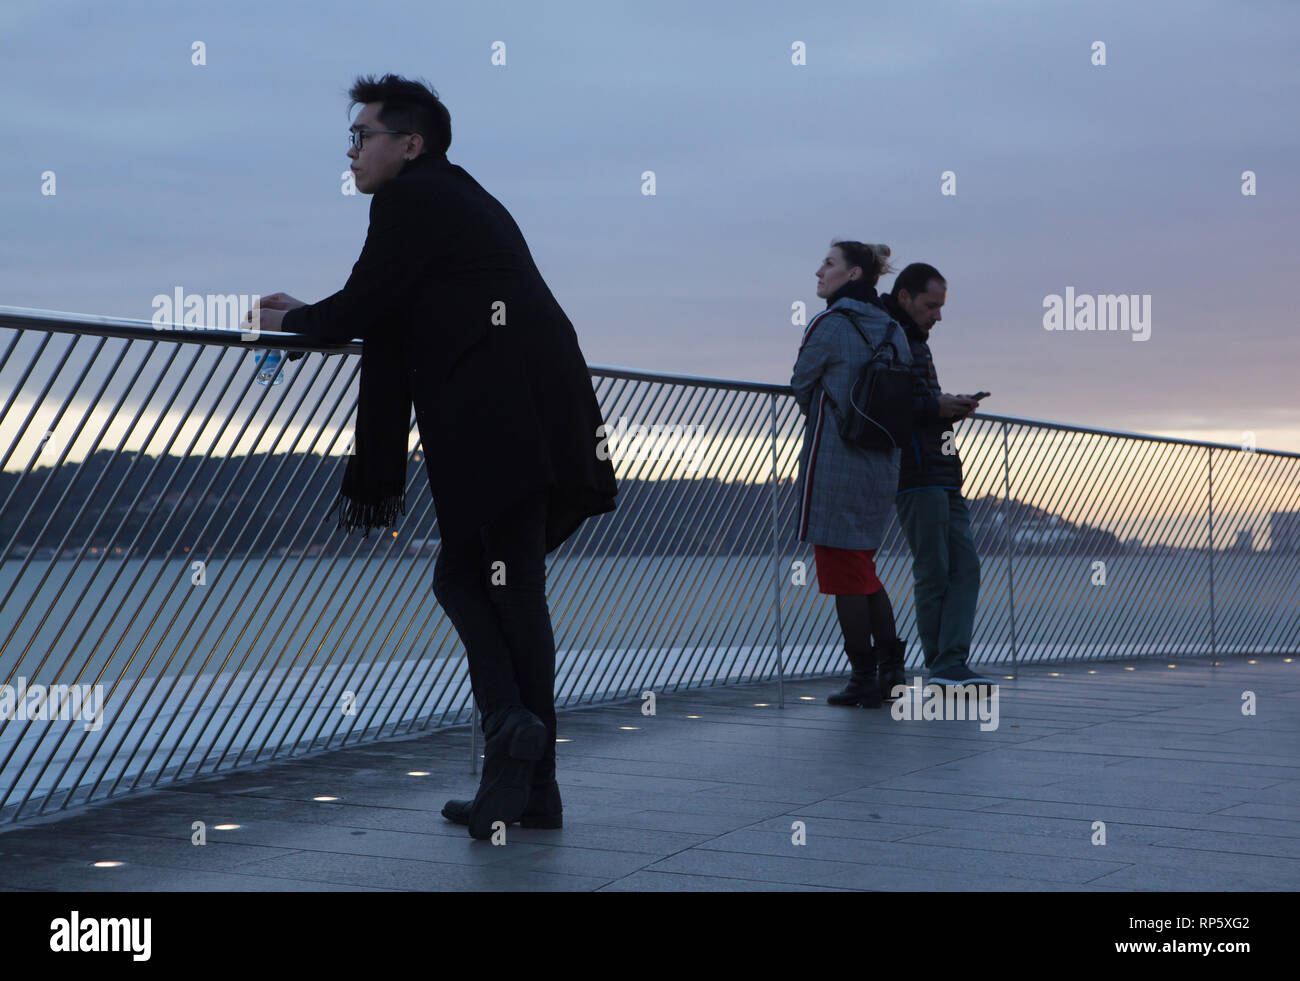 Persone Godetevi il tramonto sulla terrazza sul tetto del Museo di Arte, Architettura e Tecnologia (Maat) progettata dall'architetto britannico Amanda Levete (2016) sulla banca del fiume Tago nel quartiere Belém a Lisbona, Portogallo. Foto Stock